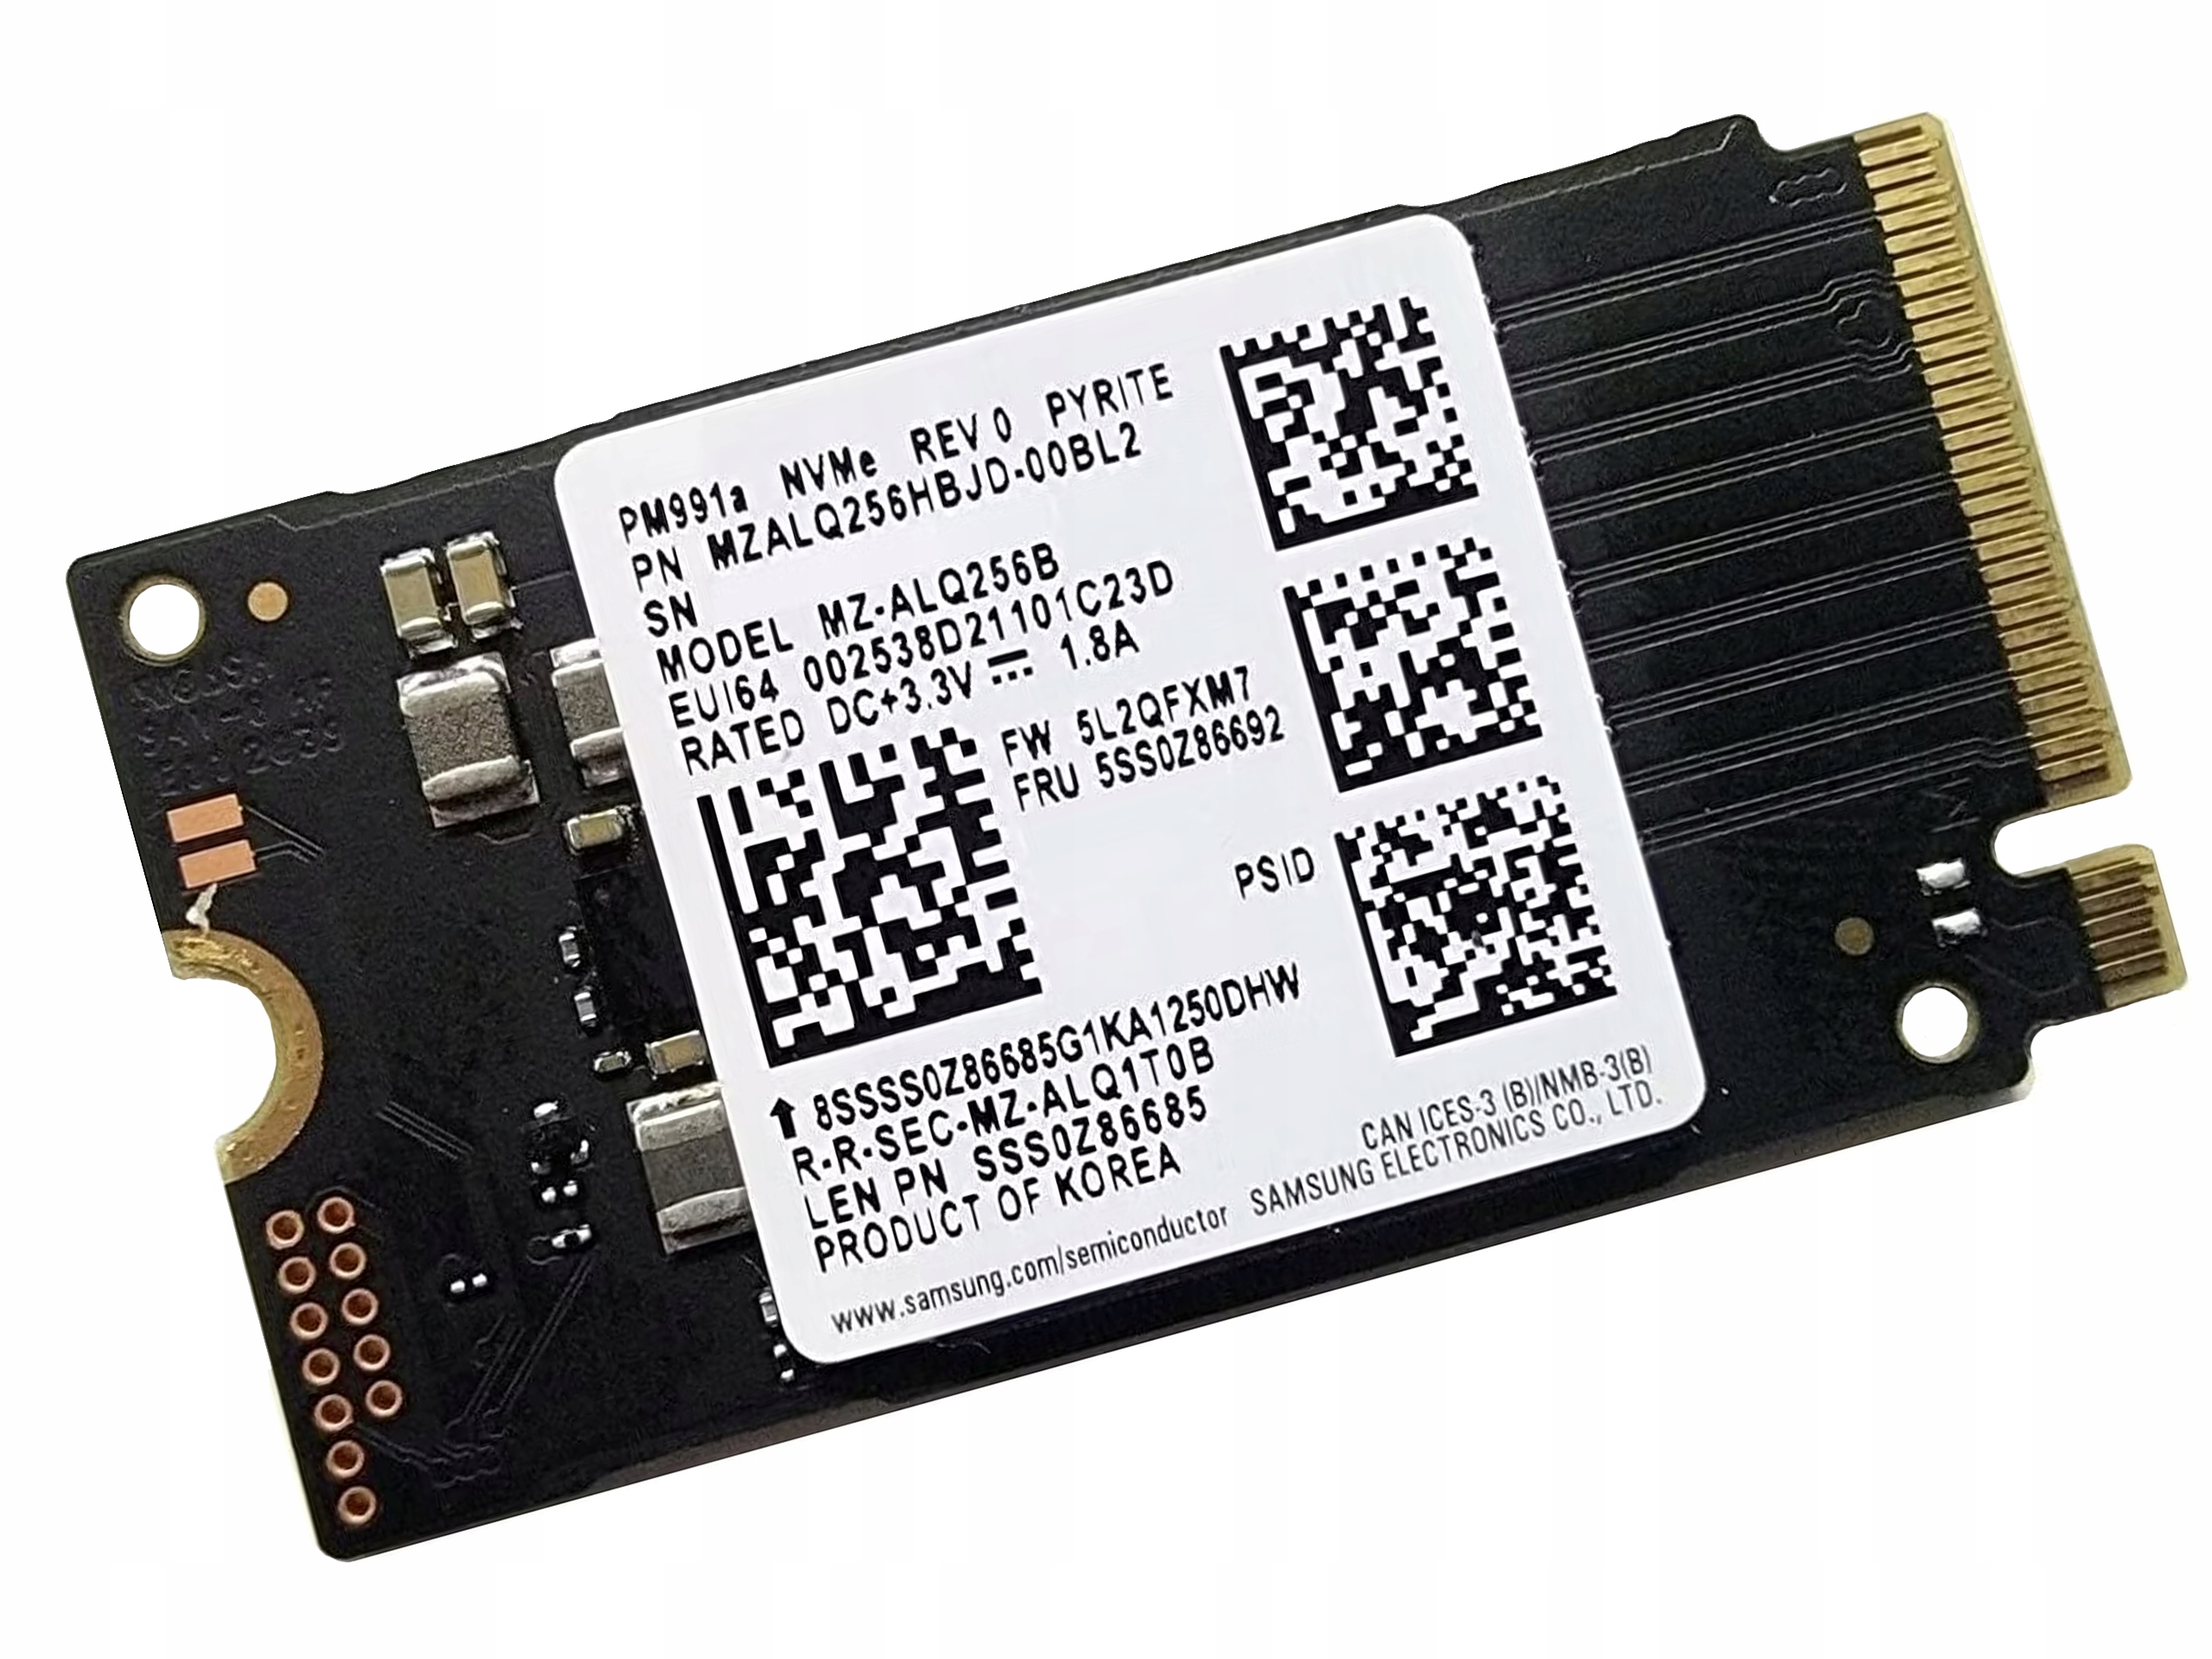 https://a.allegroimg.com/original/11ec9a/9f7908c04ac4a28e39b472a2d625/Dysk-SAMSUNG-SSD-M2-256GB-M-2-PCIe-x4-NVMe-PM991a-PM991-2280-MZALQ2560-2242